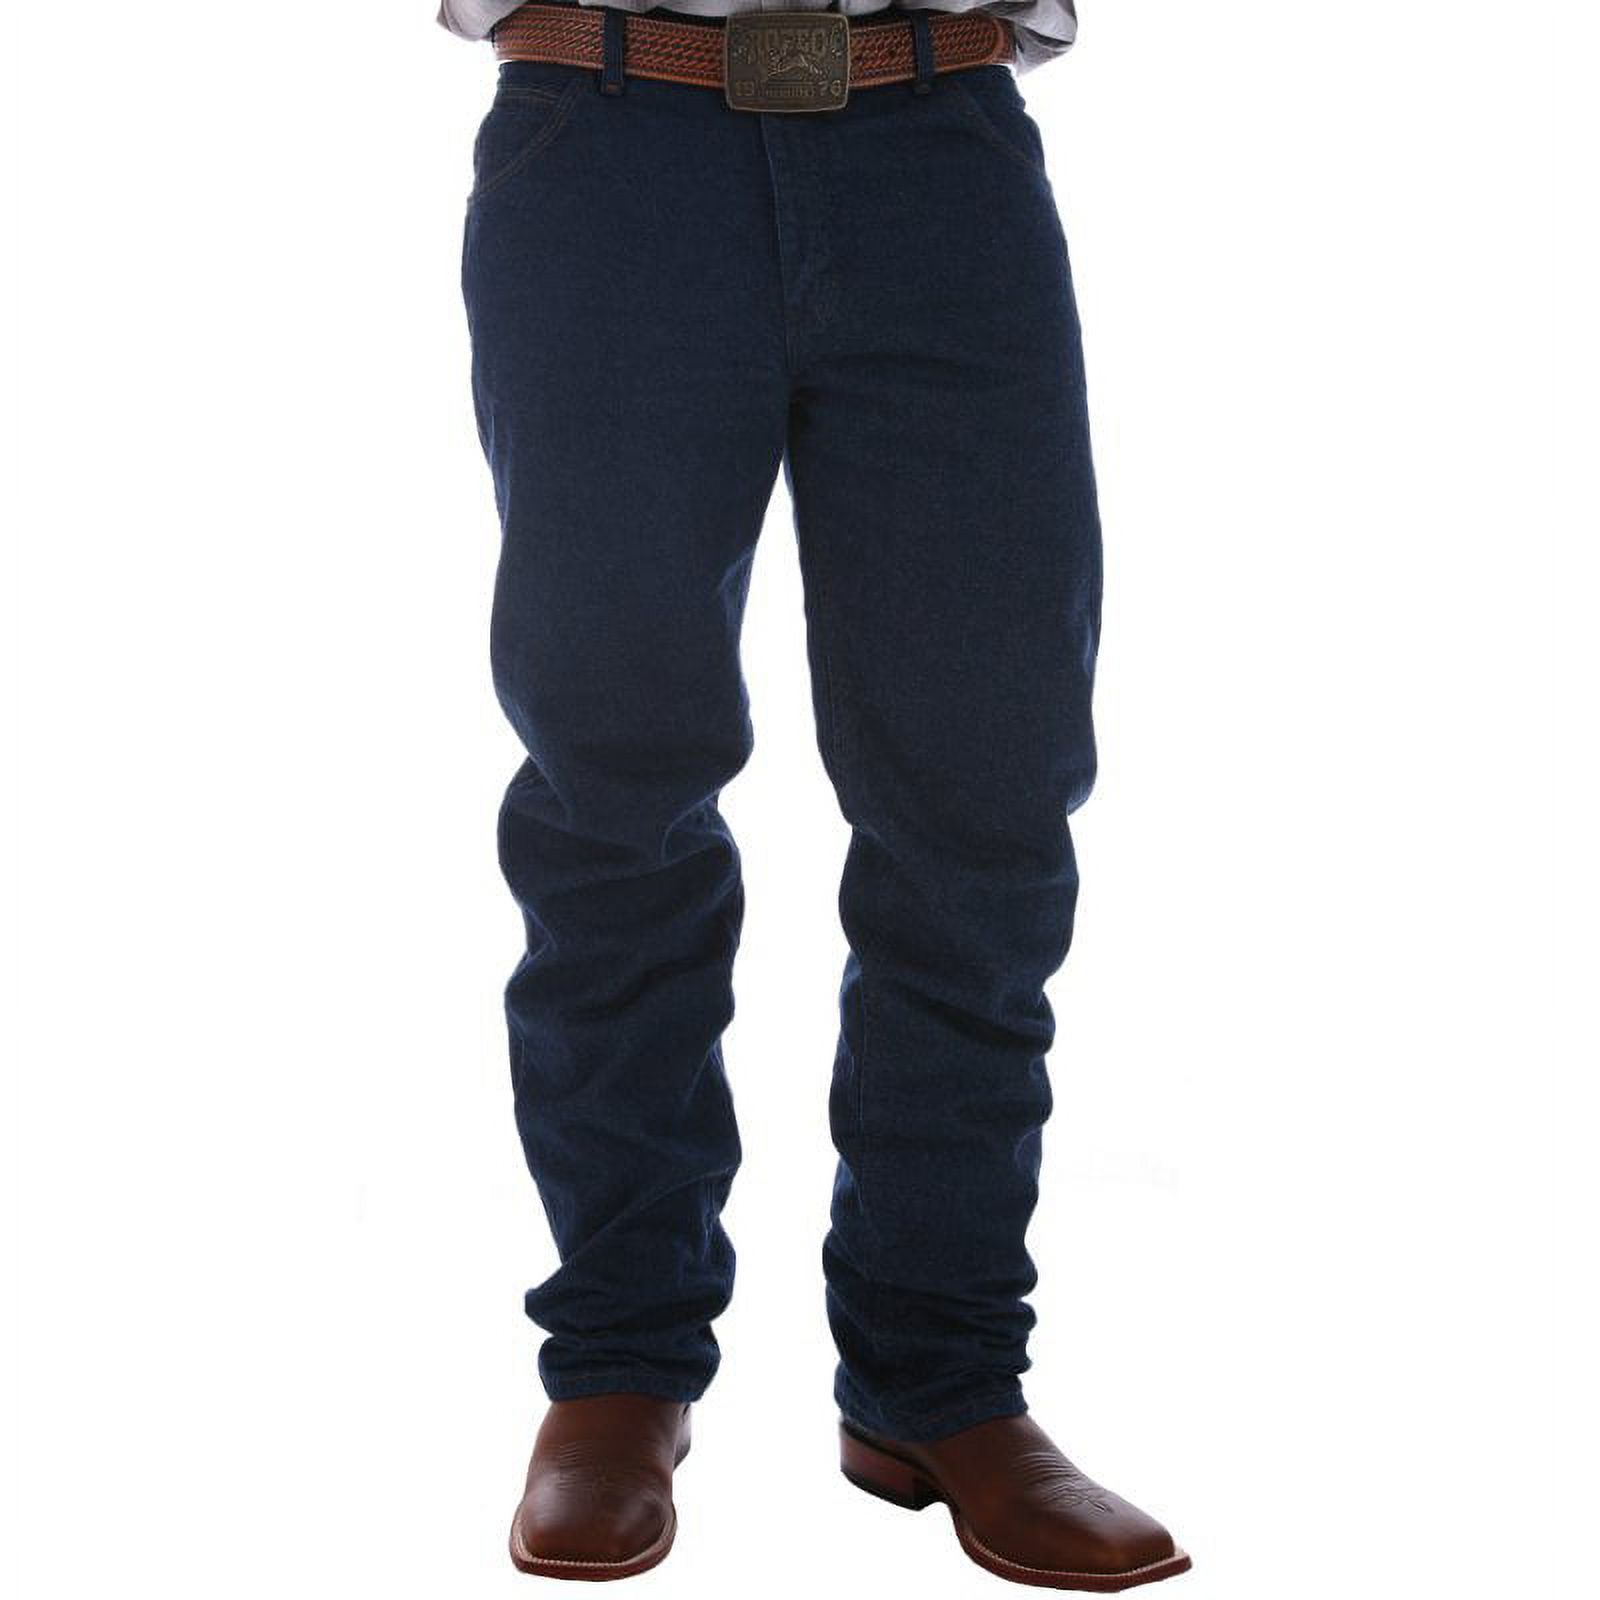 Wrangler Men's Performance Cowboy Cut Jeans Long Blue 38W x 38L  US - image 2 of 4